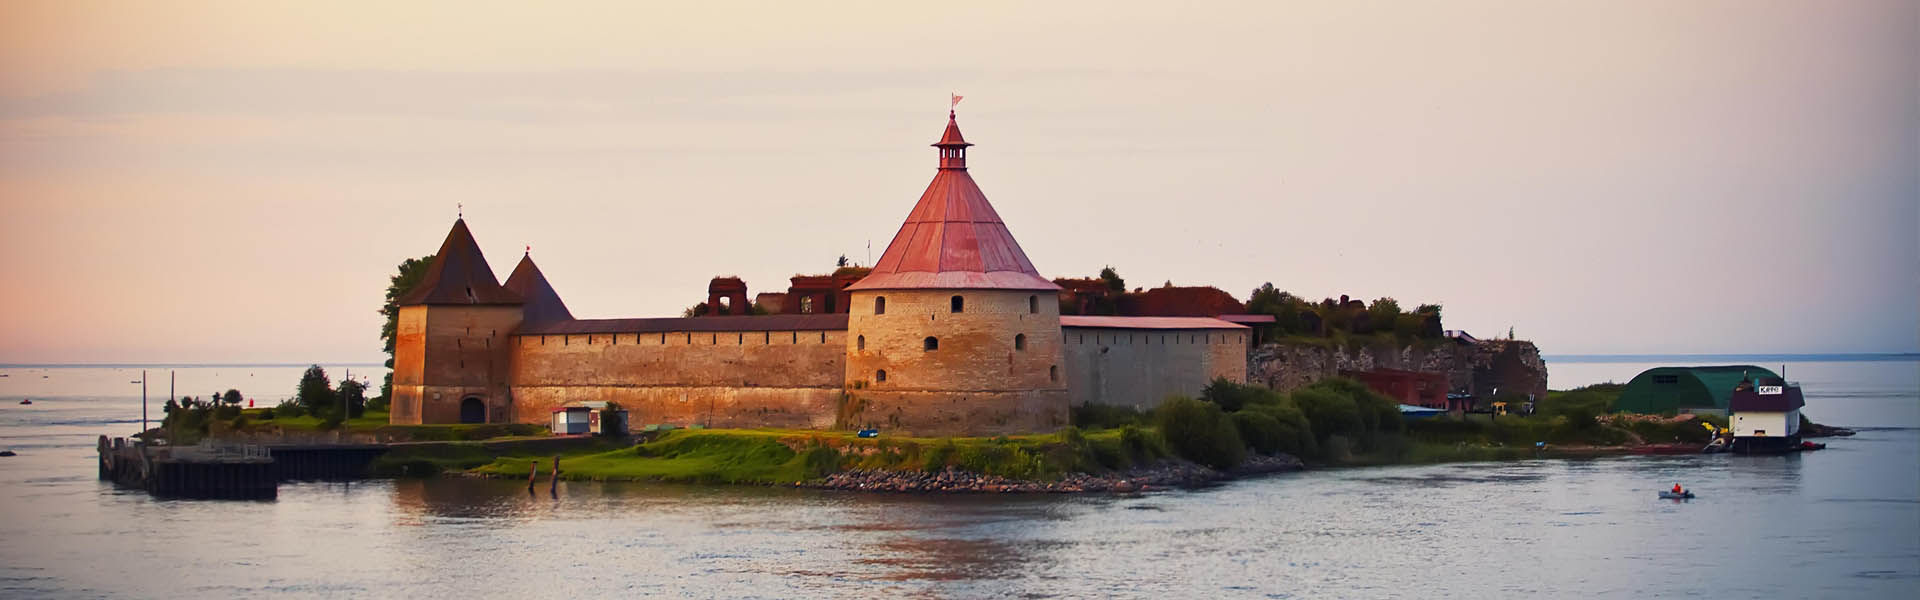 7 русских островных крепостей, от одного вида которых захватывает дух достопримечательности,крепости,Россия